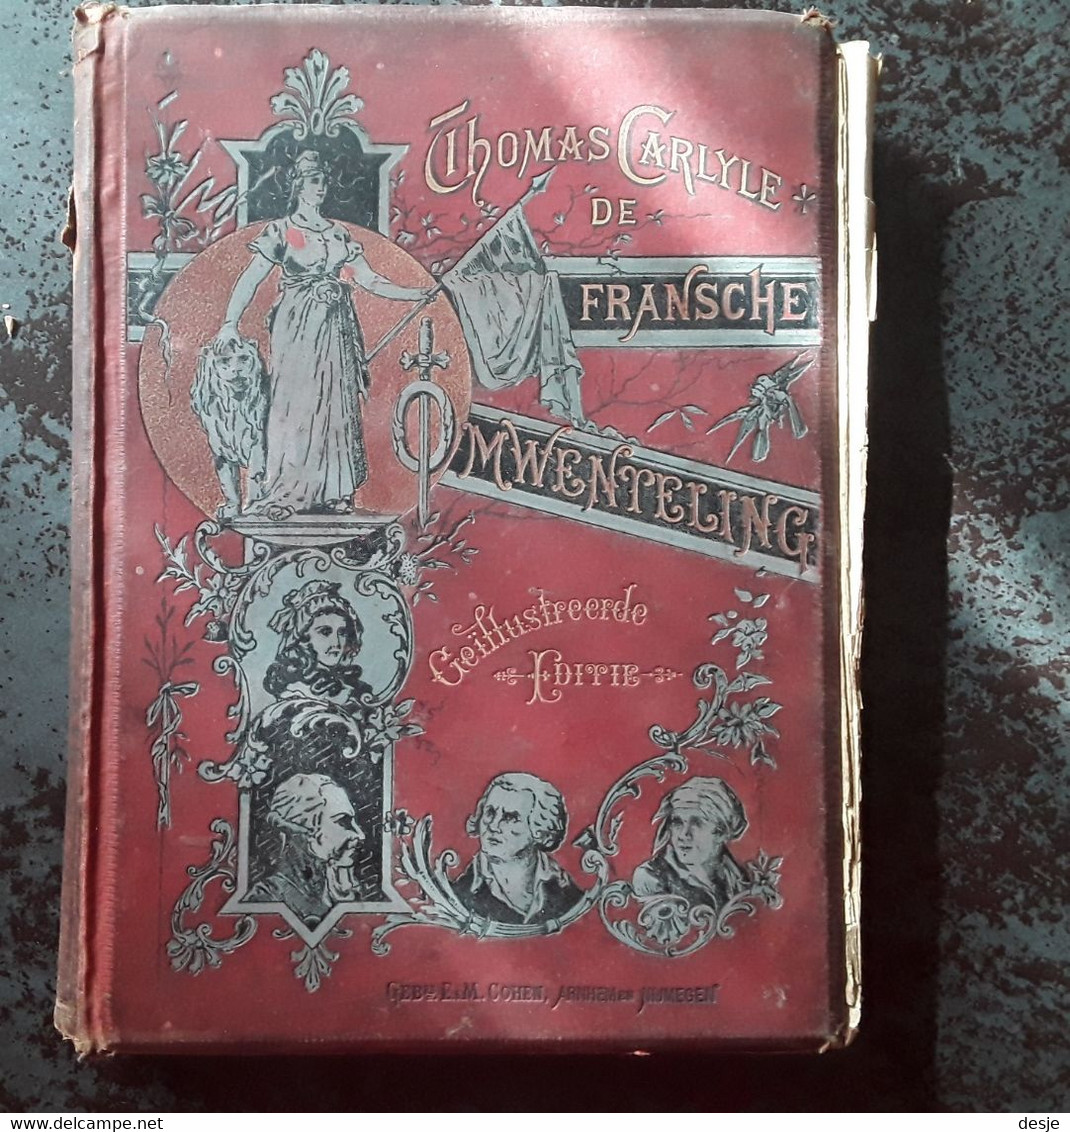 De Fransche Omwenteling Door Thomas Carlyle,tweede Deel De Constitutie, 4de Herziene Druk, Rond 1900, Nijmegen, 316 Pp. - Oud